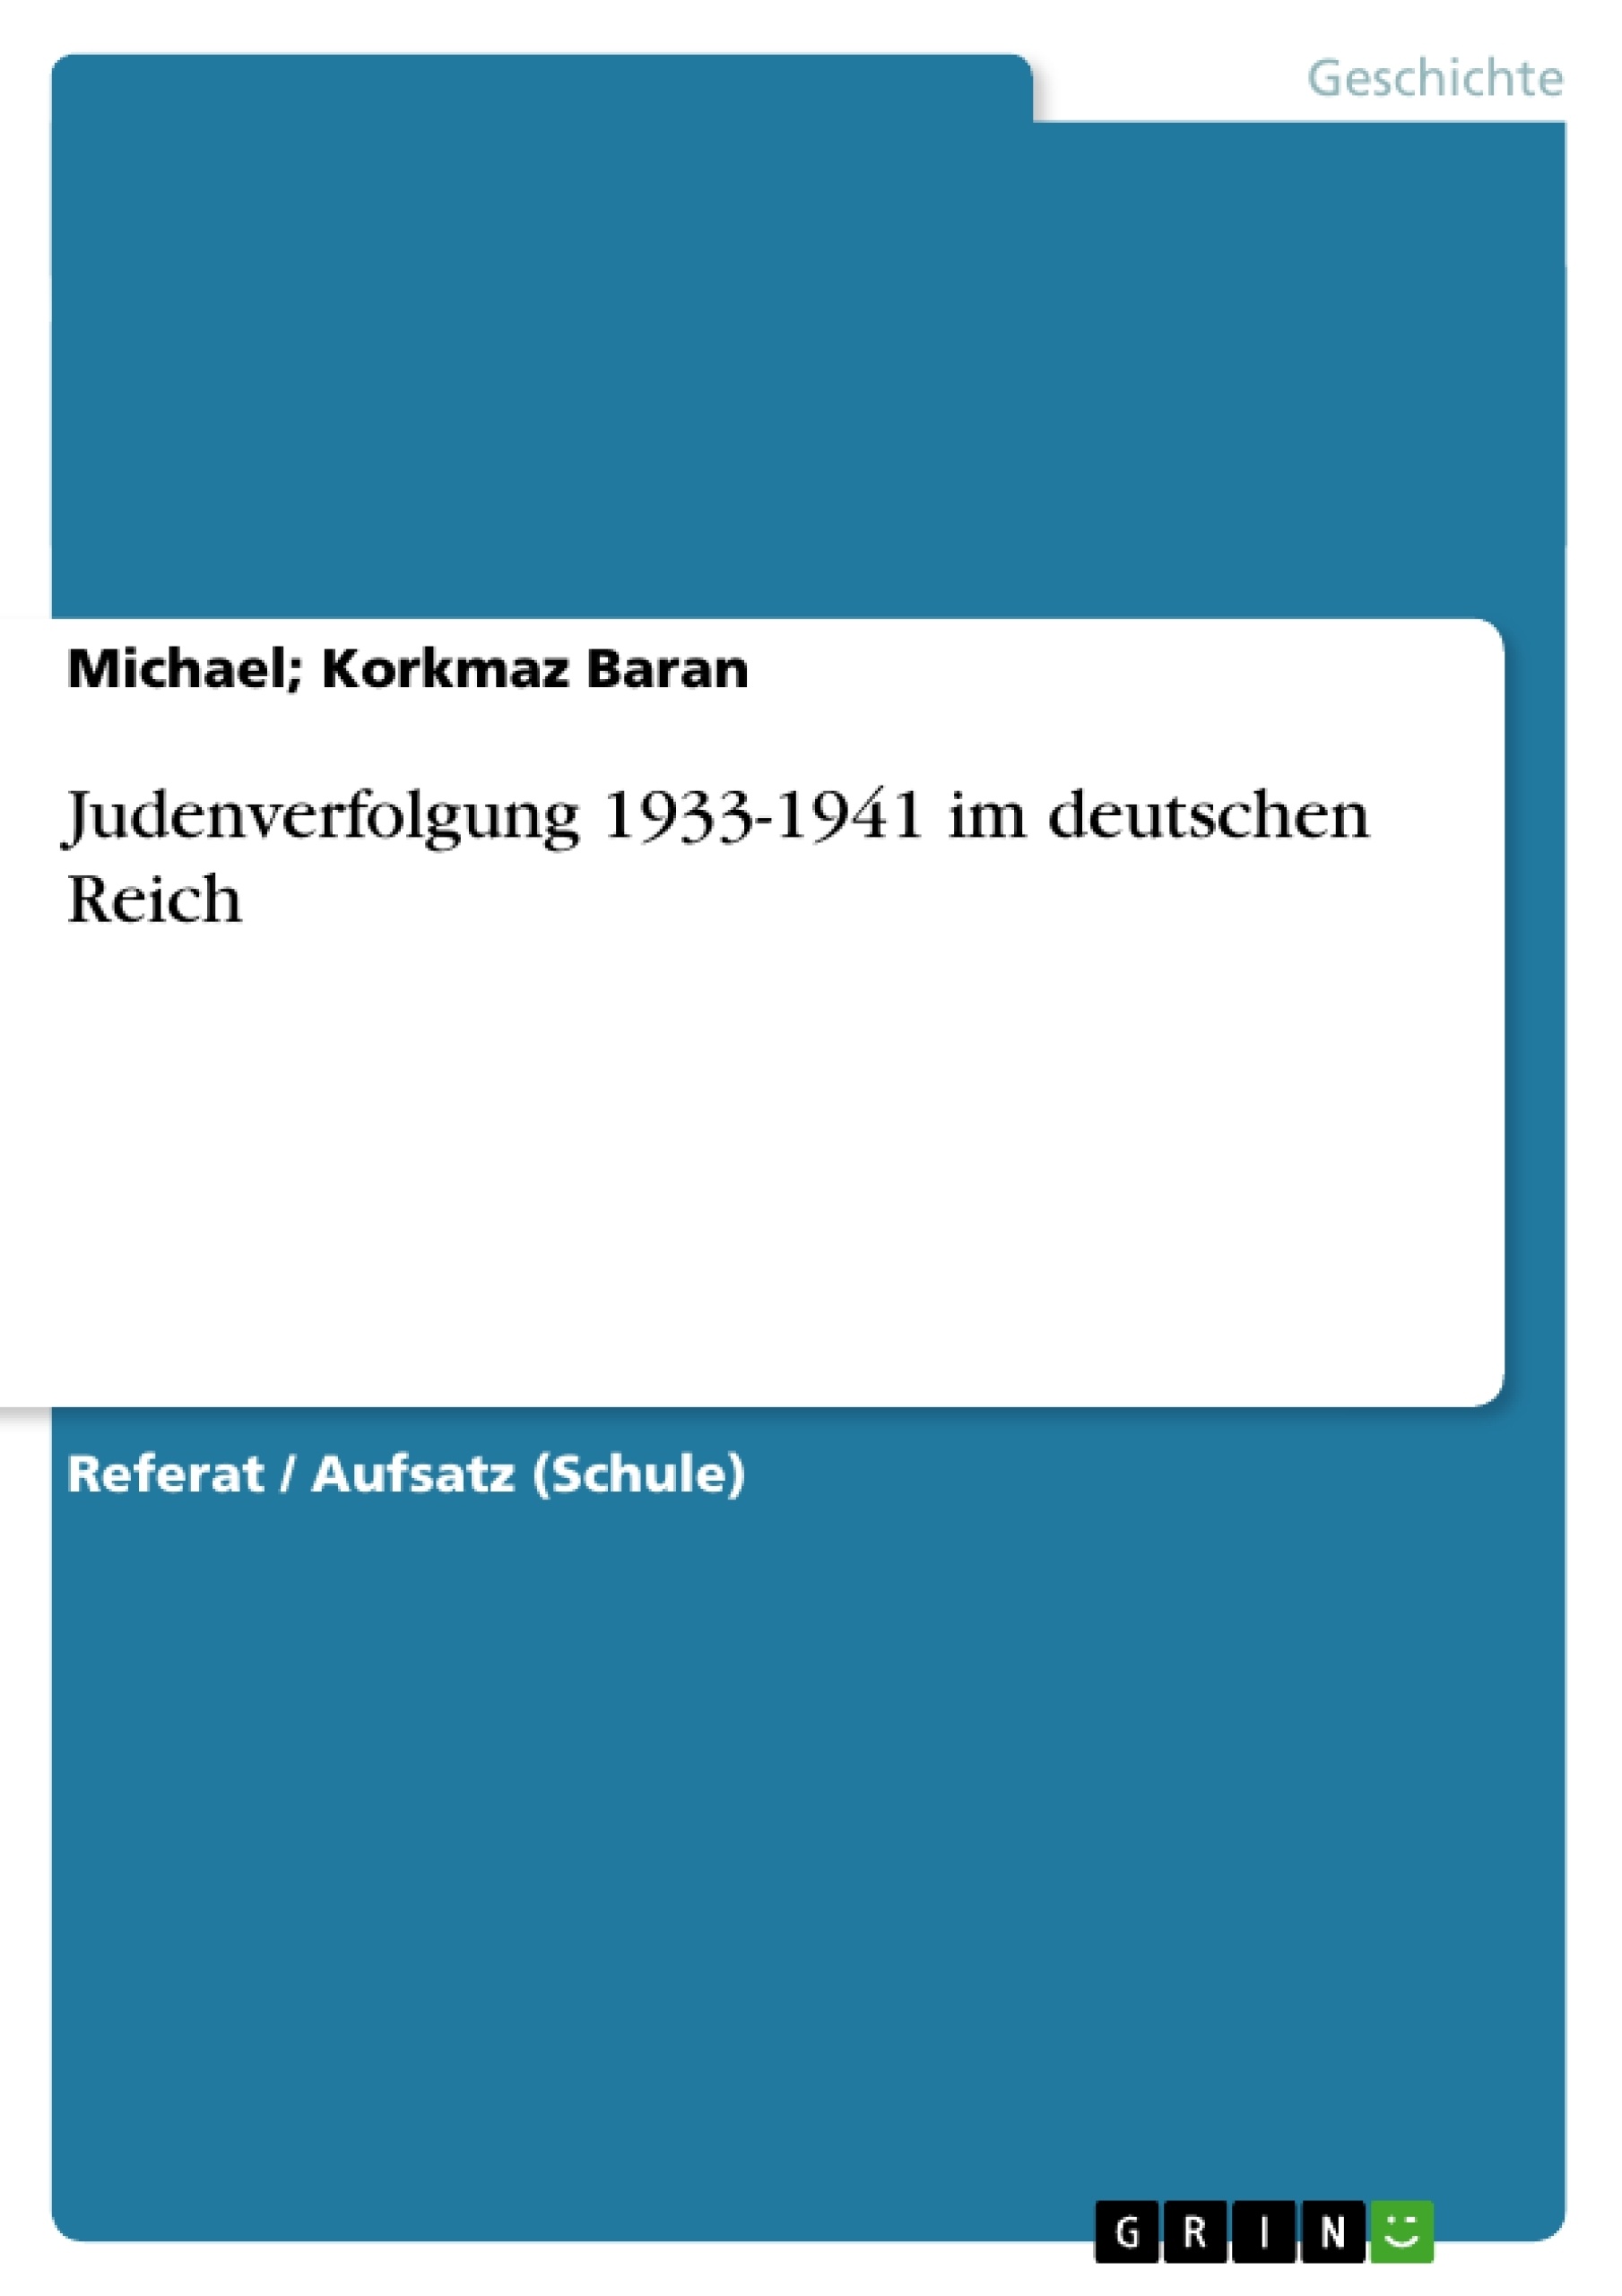 Топик: Die Judenverfolgunfg im Dritten Reich (1941-1942)